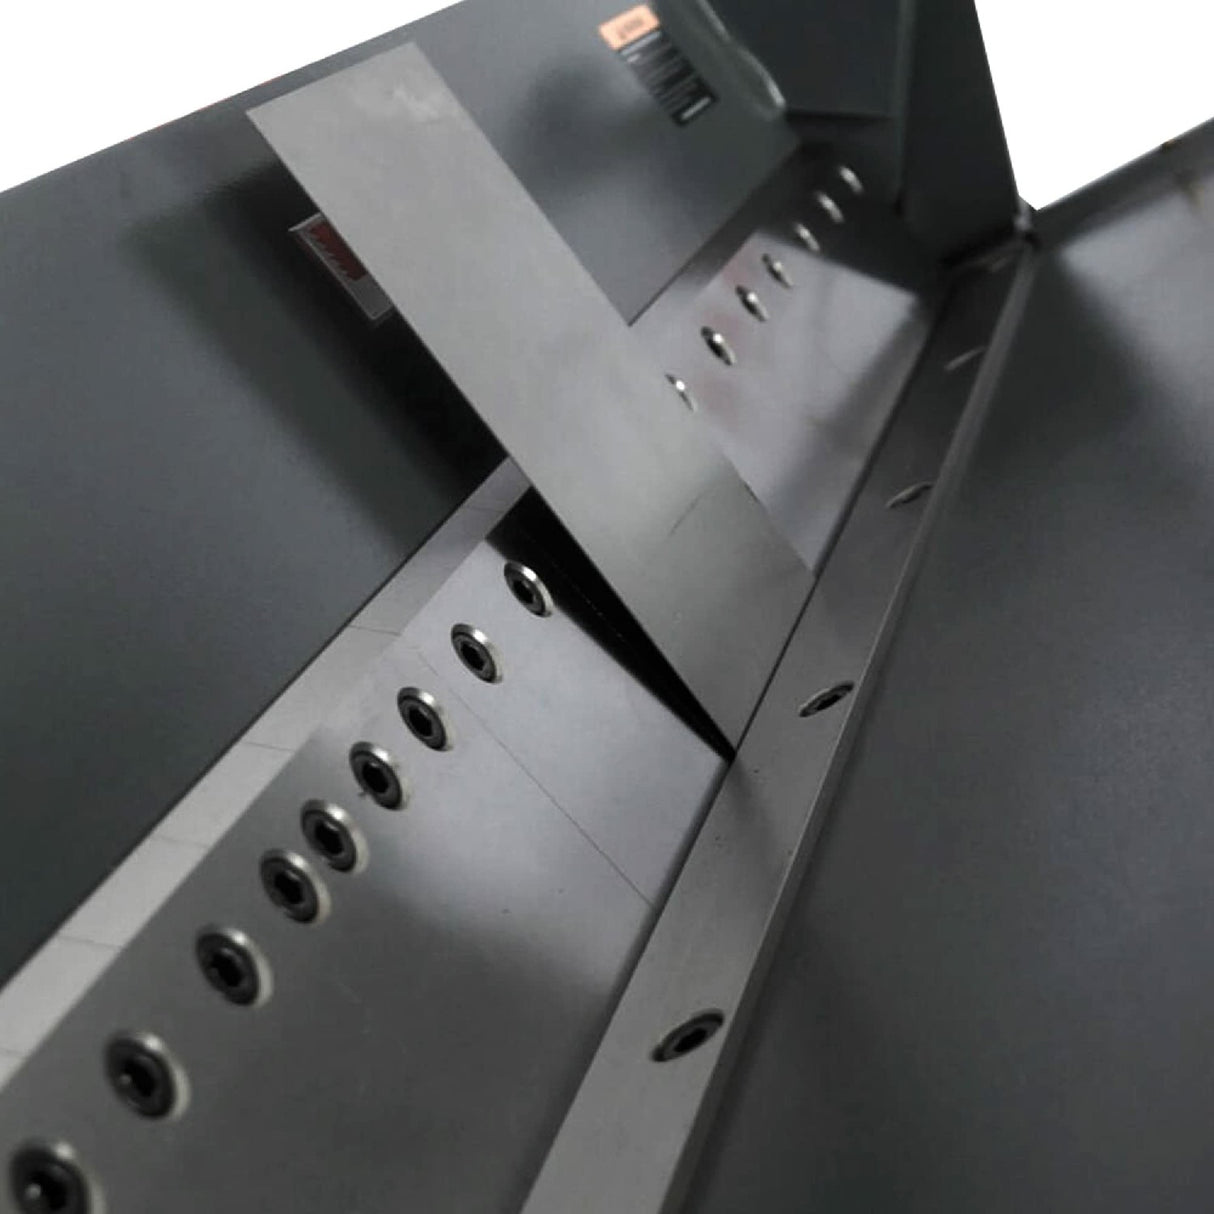 Kang Industrial PBB-5014 Box Pan Brake, Sheet Metal Folding Machine 2.0x1270 mm Plate